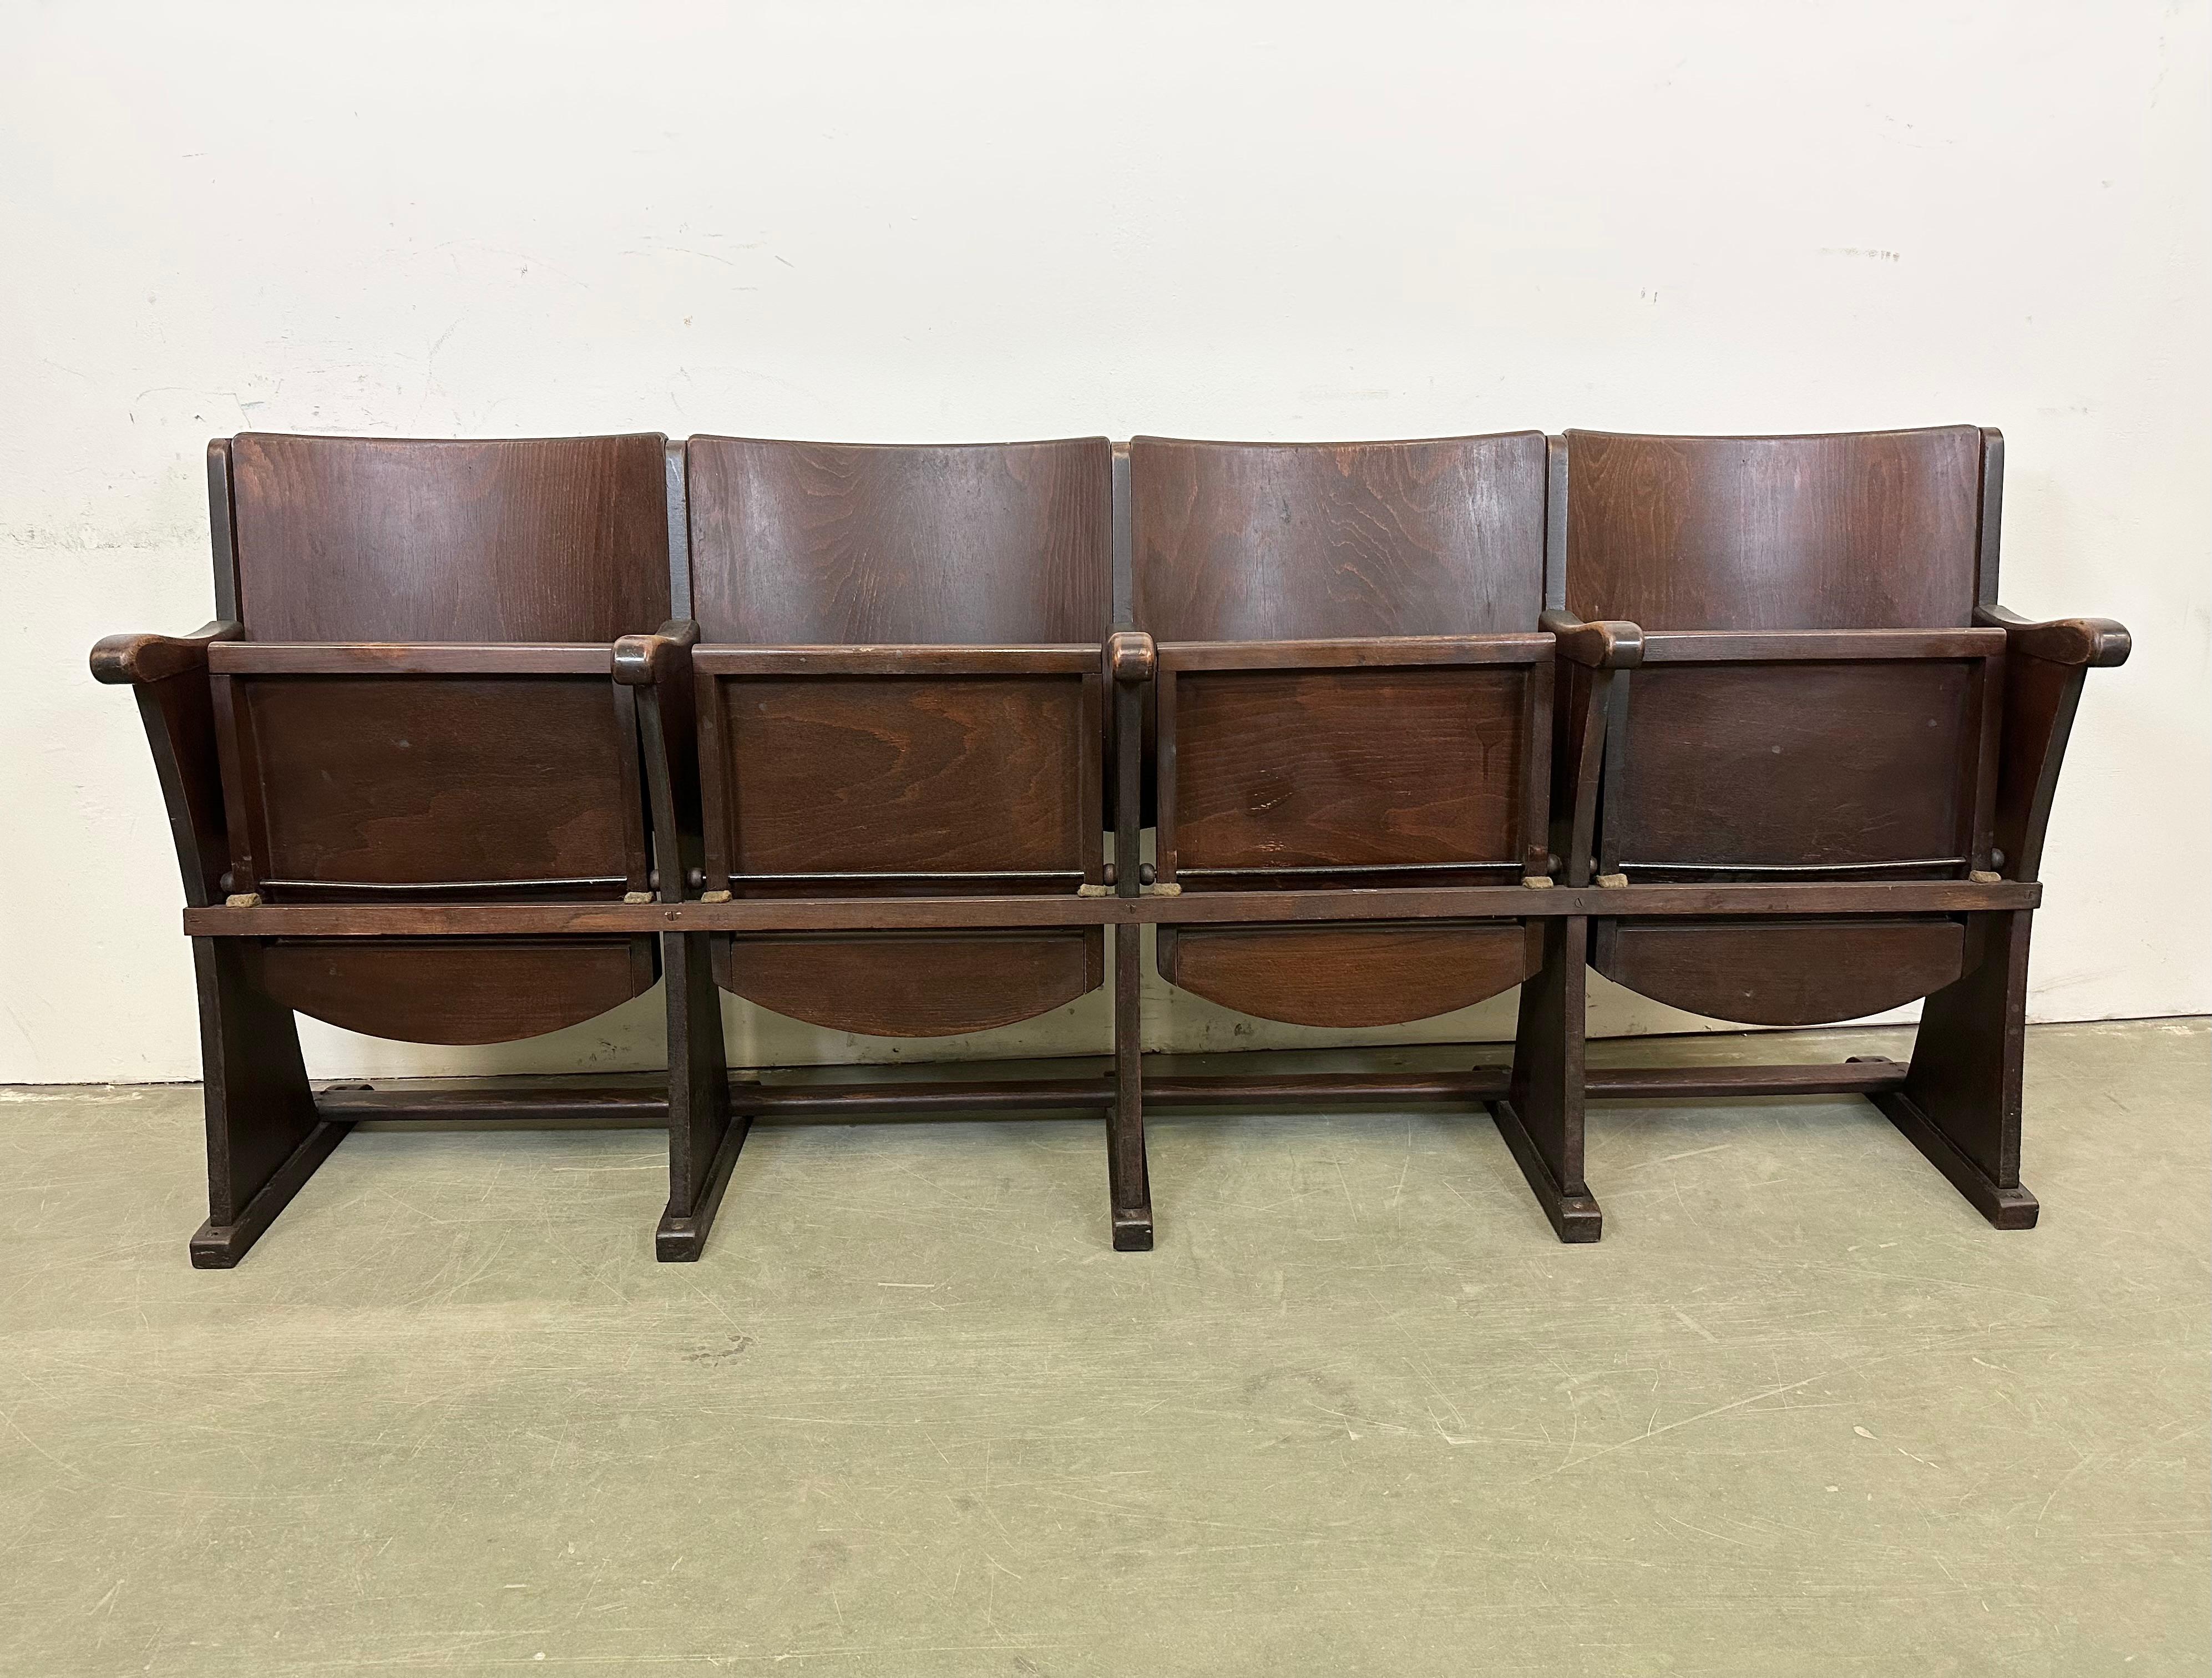 Diese viersitzige Kinobank wurde von Thonet in der ehemaligen Tschechoslowakei in den 1930er bis 1950er Jahren hergestellt. Die Stühle sind stabil und können überall aufgestellt werden. Es ist komplett aus Holz gefertigt (teilweise Massivholz,